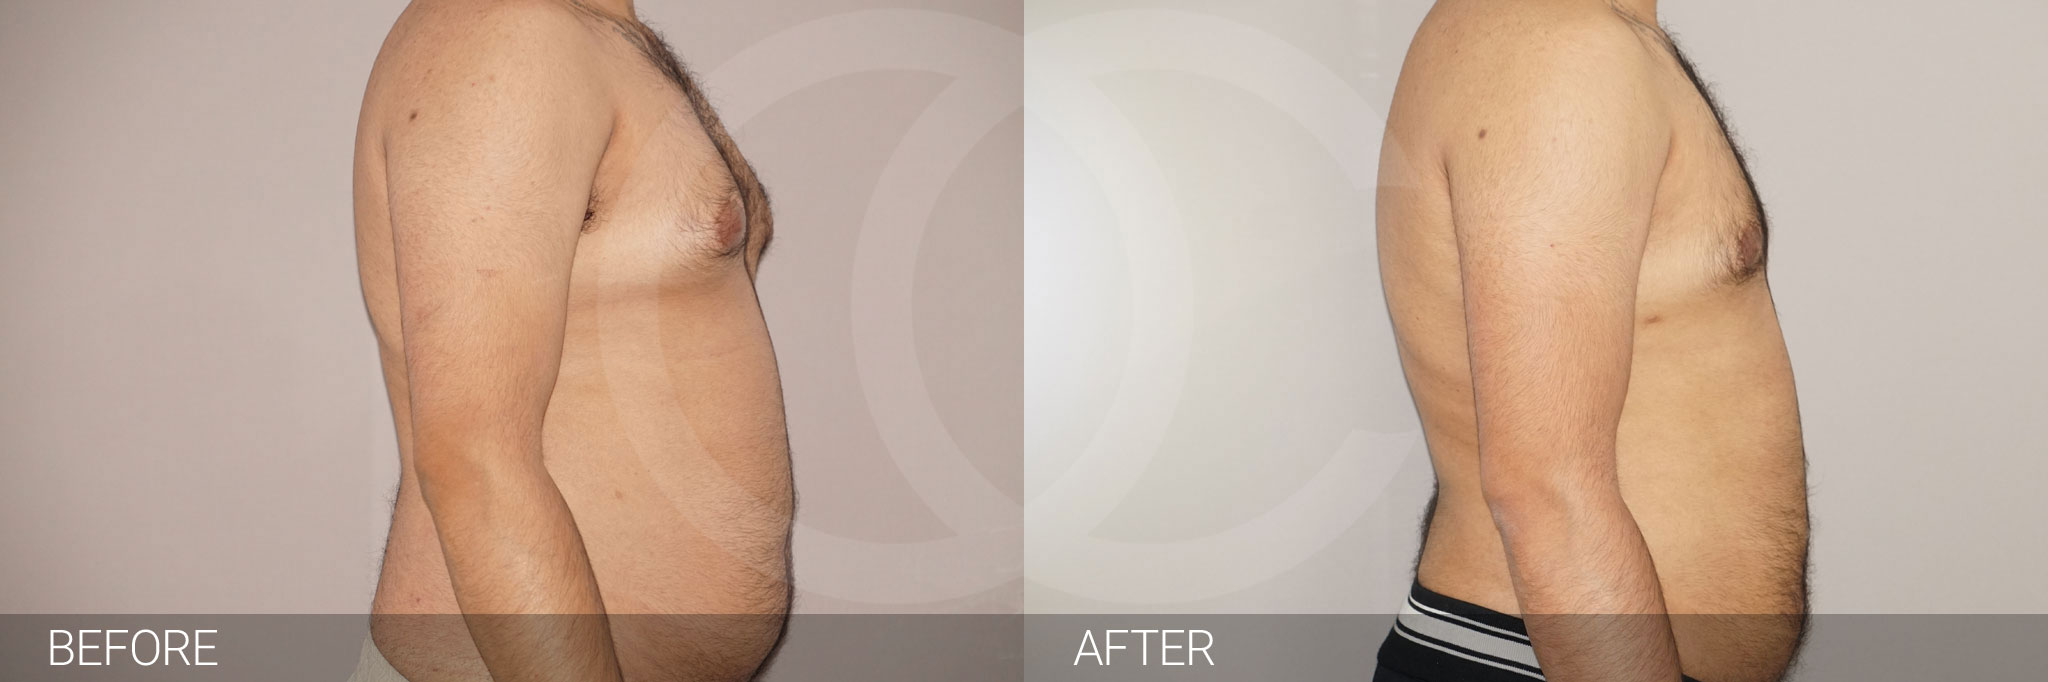 Antes y después Fotos de cirugía para hombres fotos reales de pacientes 3.2 | Ocean Clinic Marbella Madrid